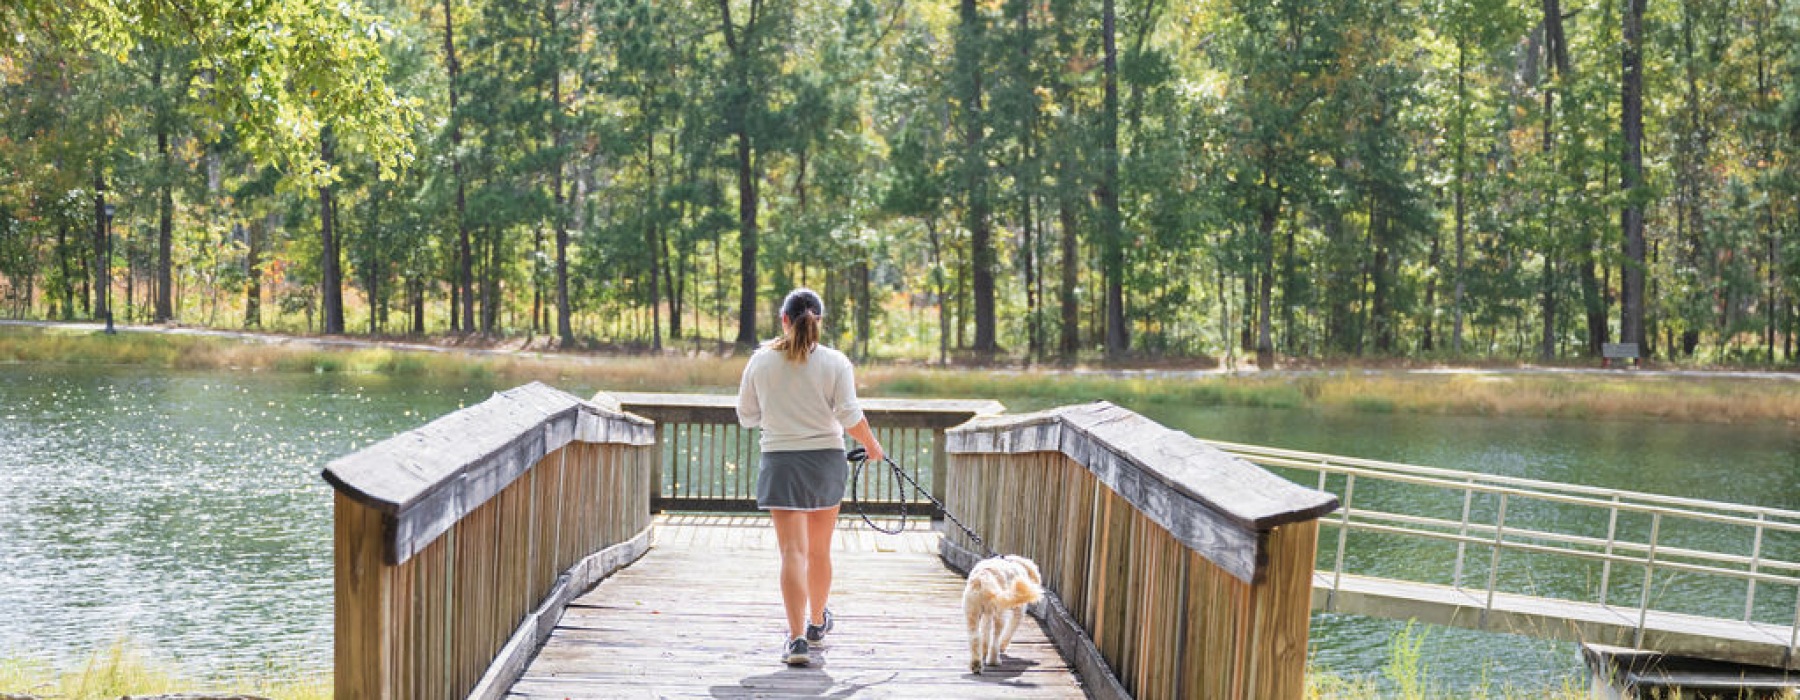 girl walking dog near lake